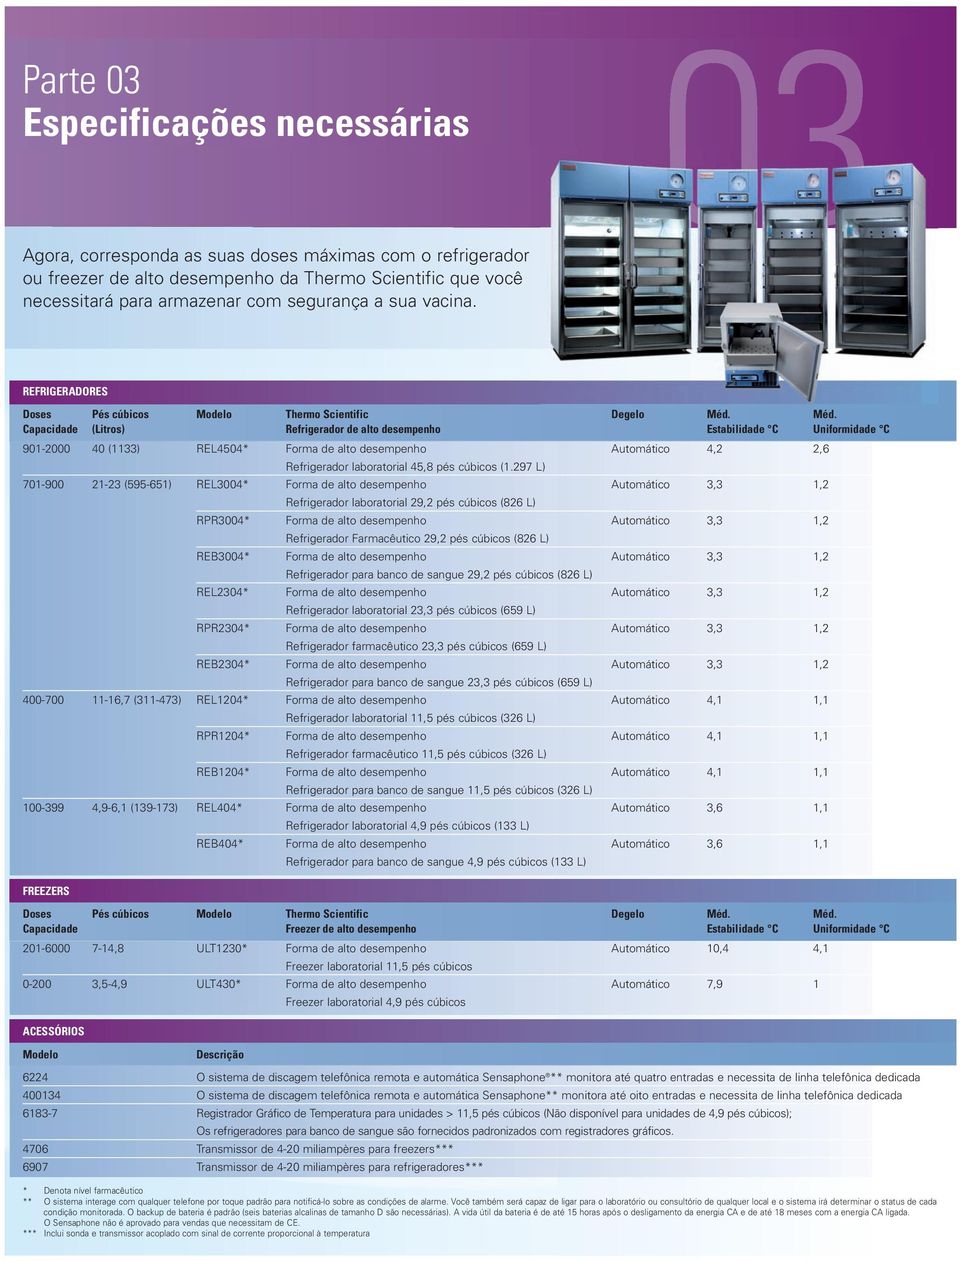 Méd. Capacidade(Litros) Refrigerador de alto desempenho Estabilidade C Uniformidade C 901-2000 40 (1133) REL4504* Forma de alto desempenho Automático 4,2 2,6 Refrigerador laboratorial 45,8 pés